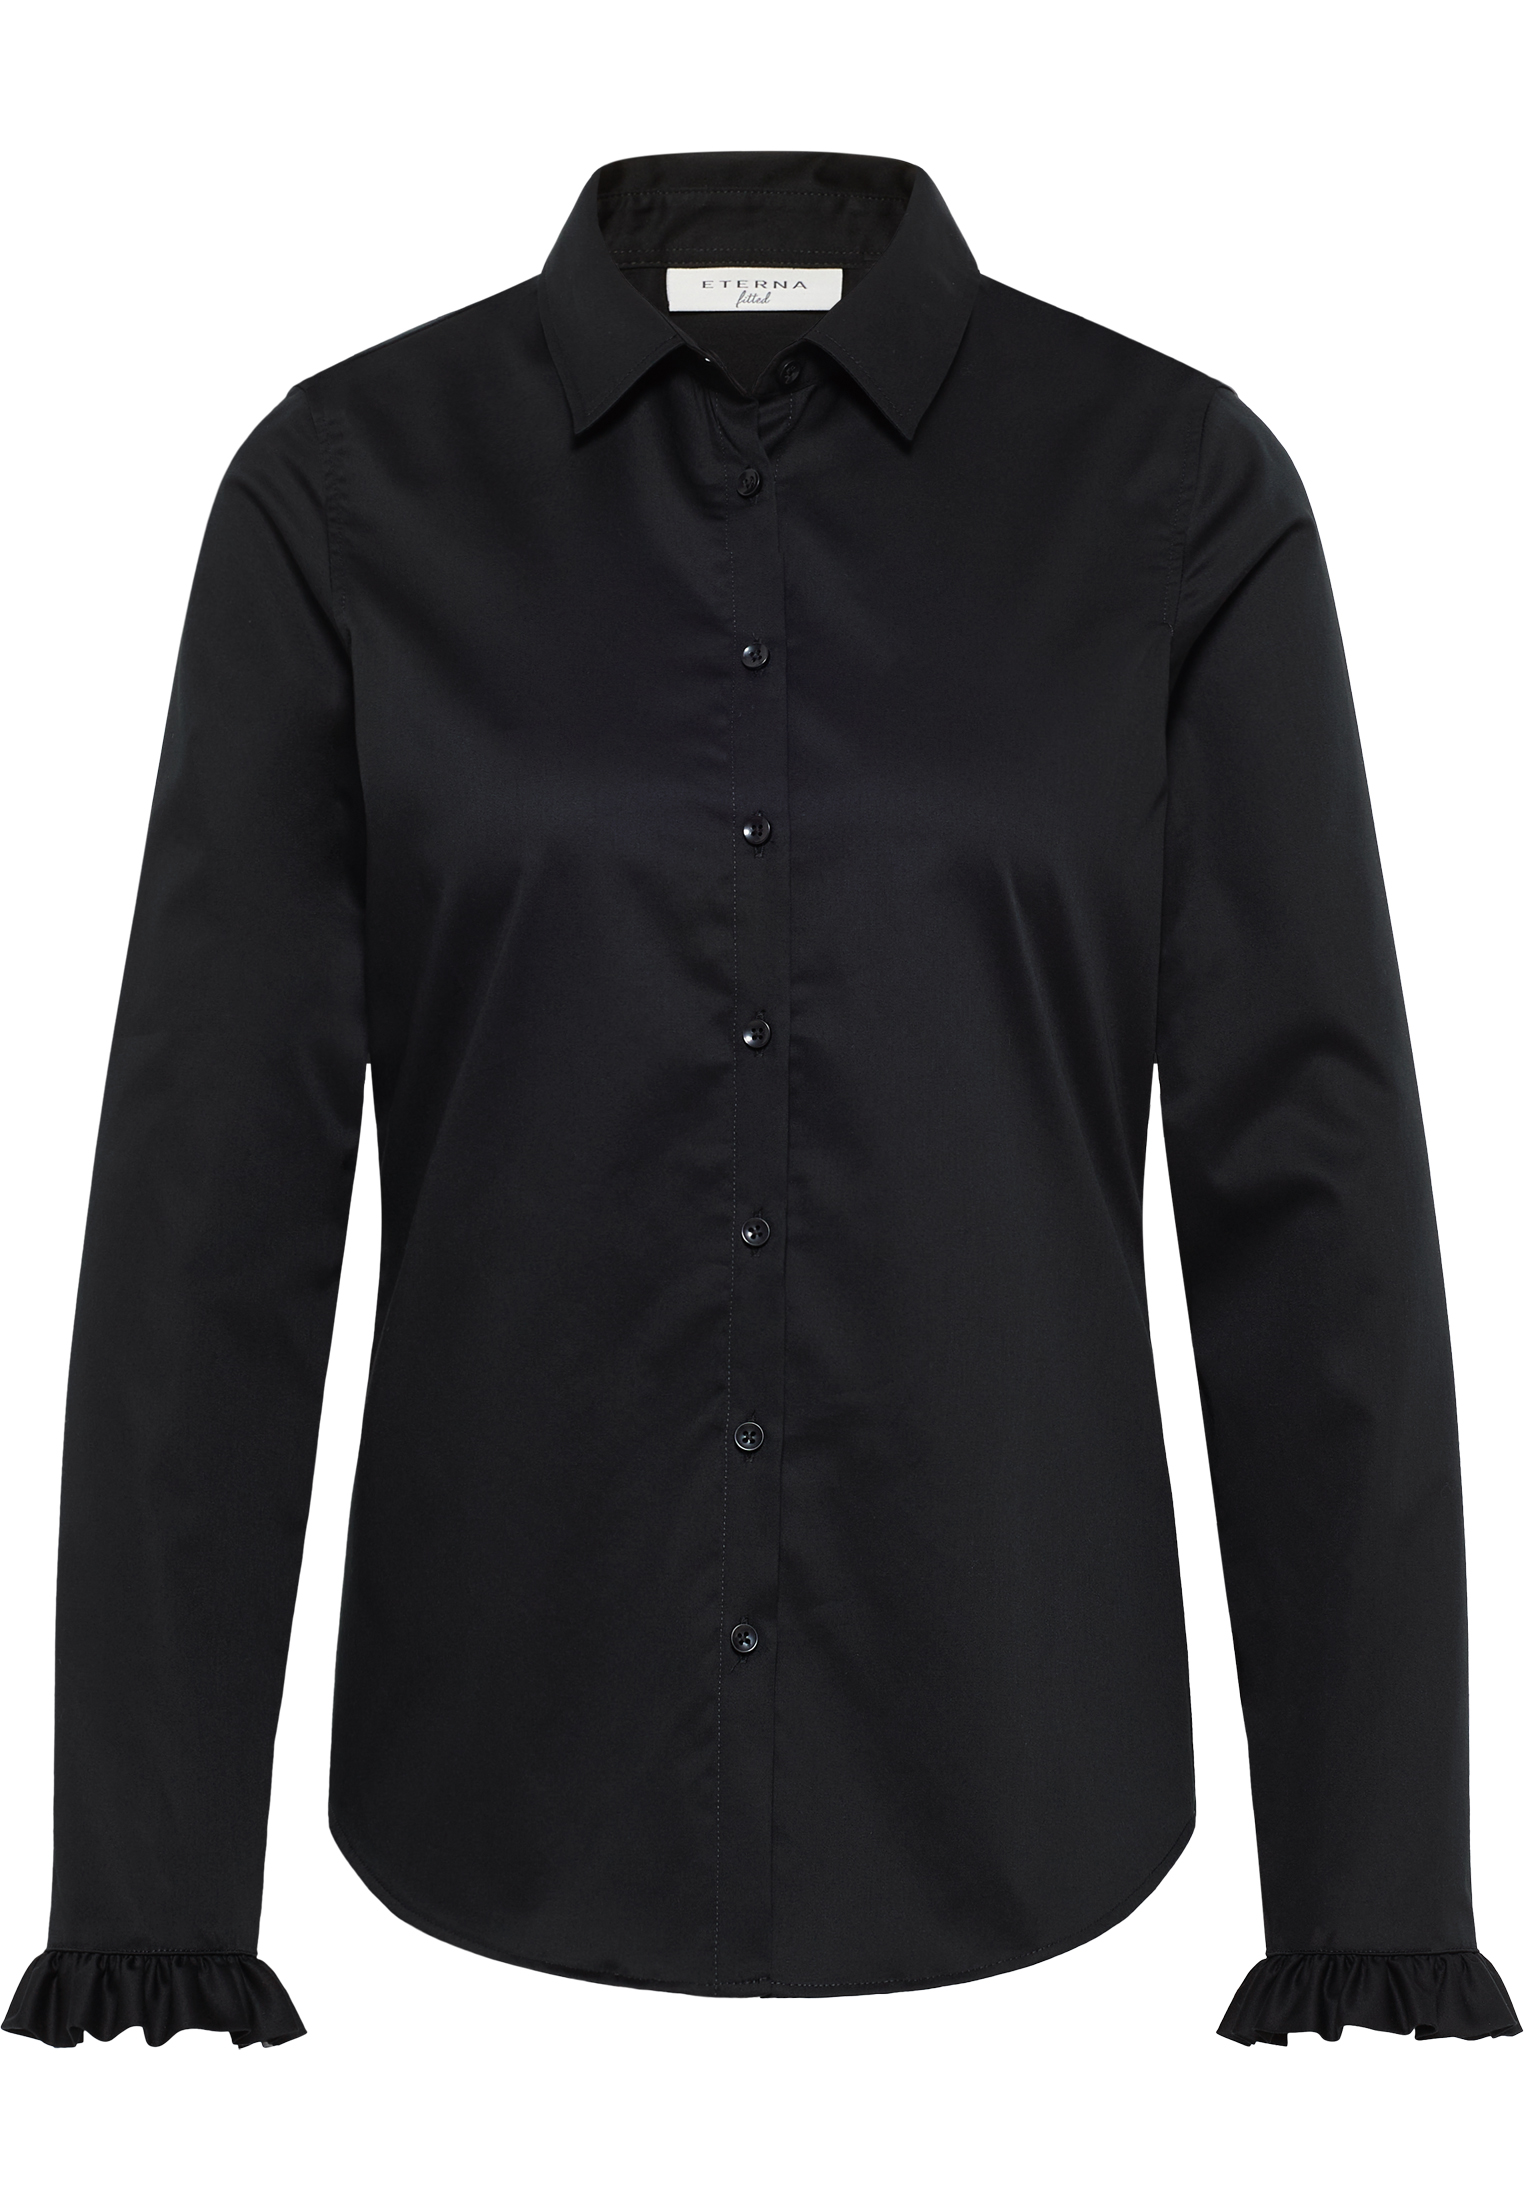 Satin Shirt Bluse in schwarz | 2BL04181-03-91-40-1/1 Langarm | | schwarz 40 unifarben 